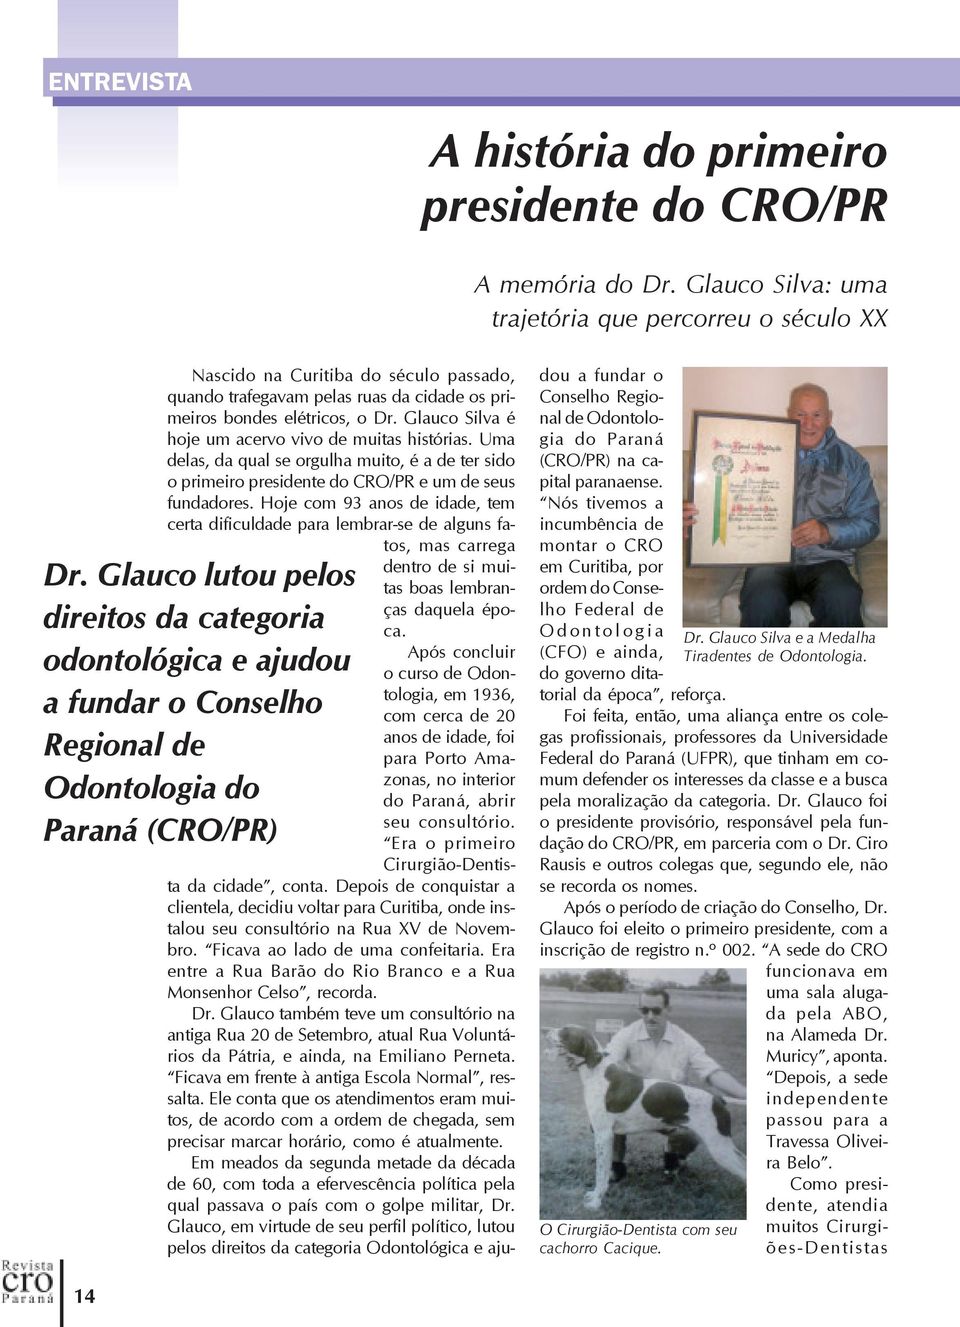 Glauco Silva é hoje um acervo vivo de muitas histórias. Uma delas, da qual se orgulha muito, é a de ter sido o primeiro presidente do CRO/PR e um de seus fundadores.